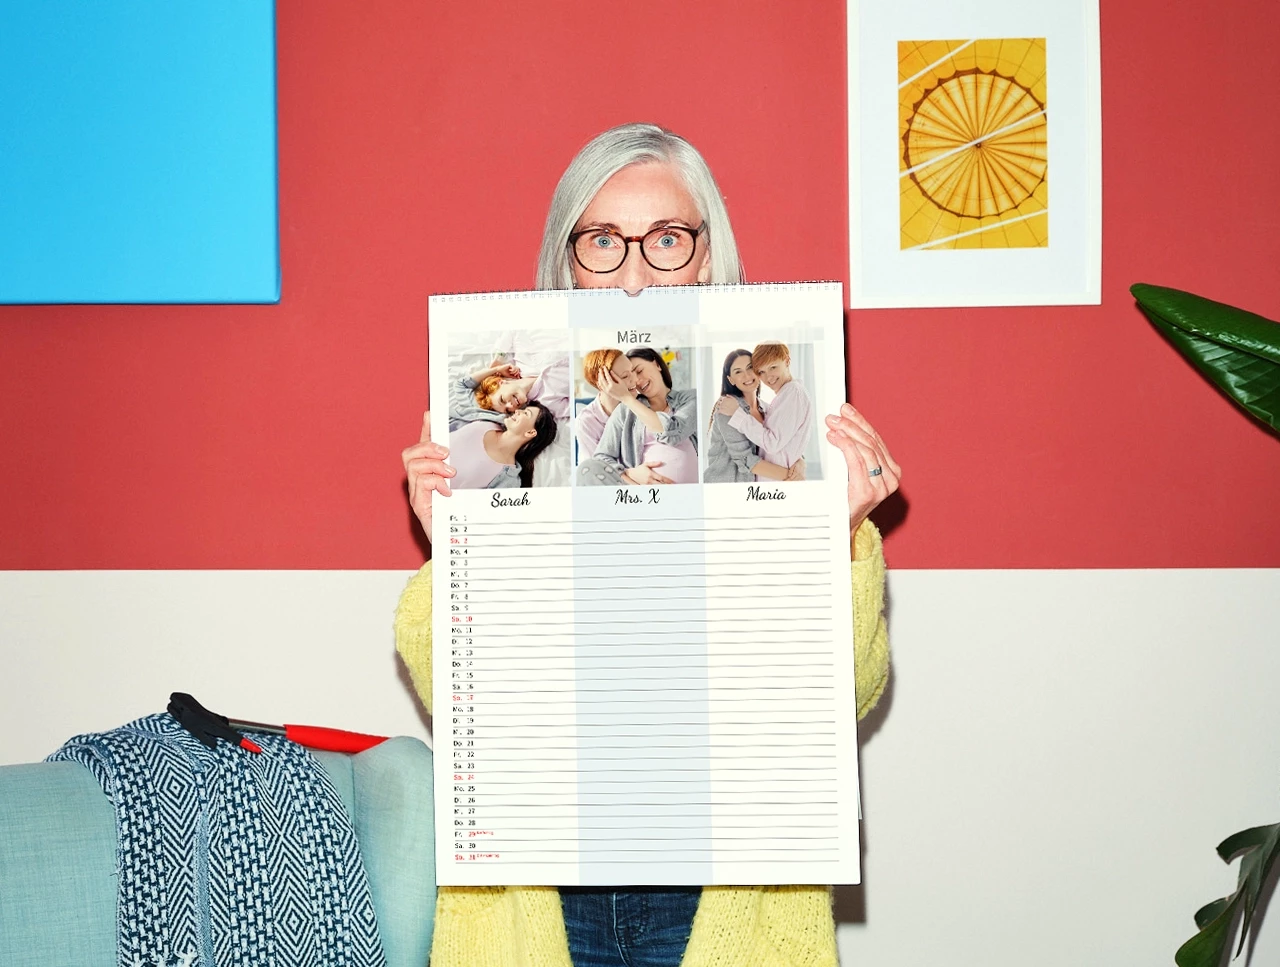 Eine weißhaarige Frau im gelben Strickmantel hält einen großen Terminkalender vor sich, der zeigt, wie du deinen Fotokalender selbst gestalten könntest.